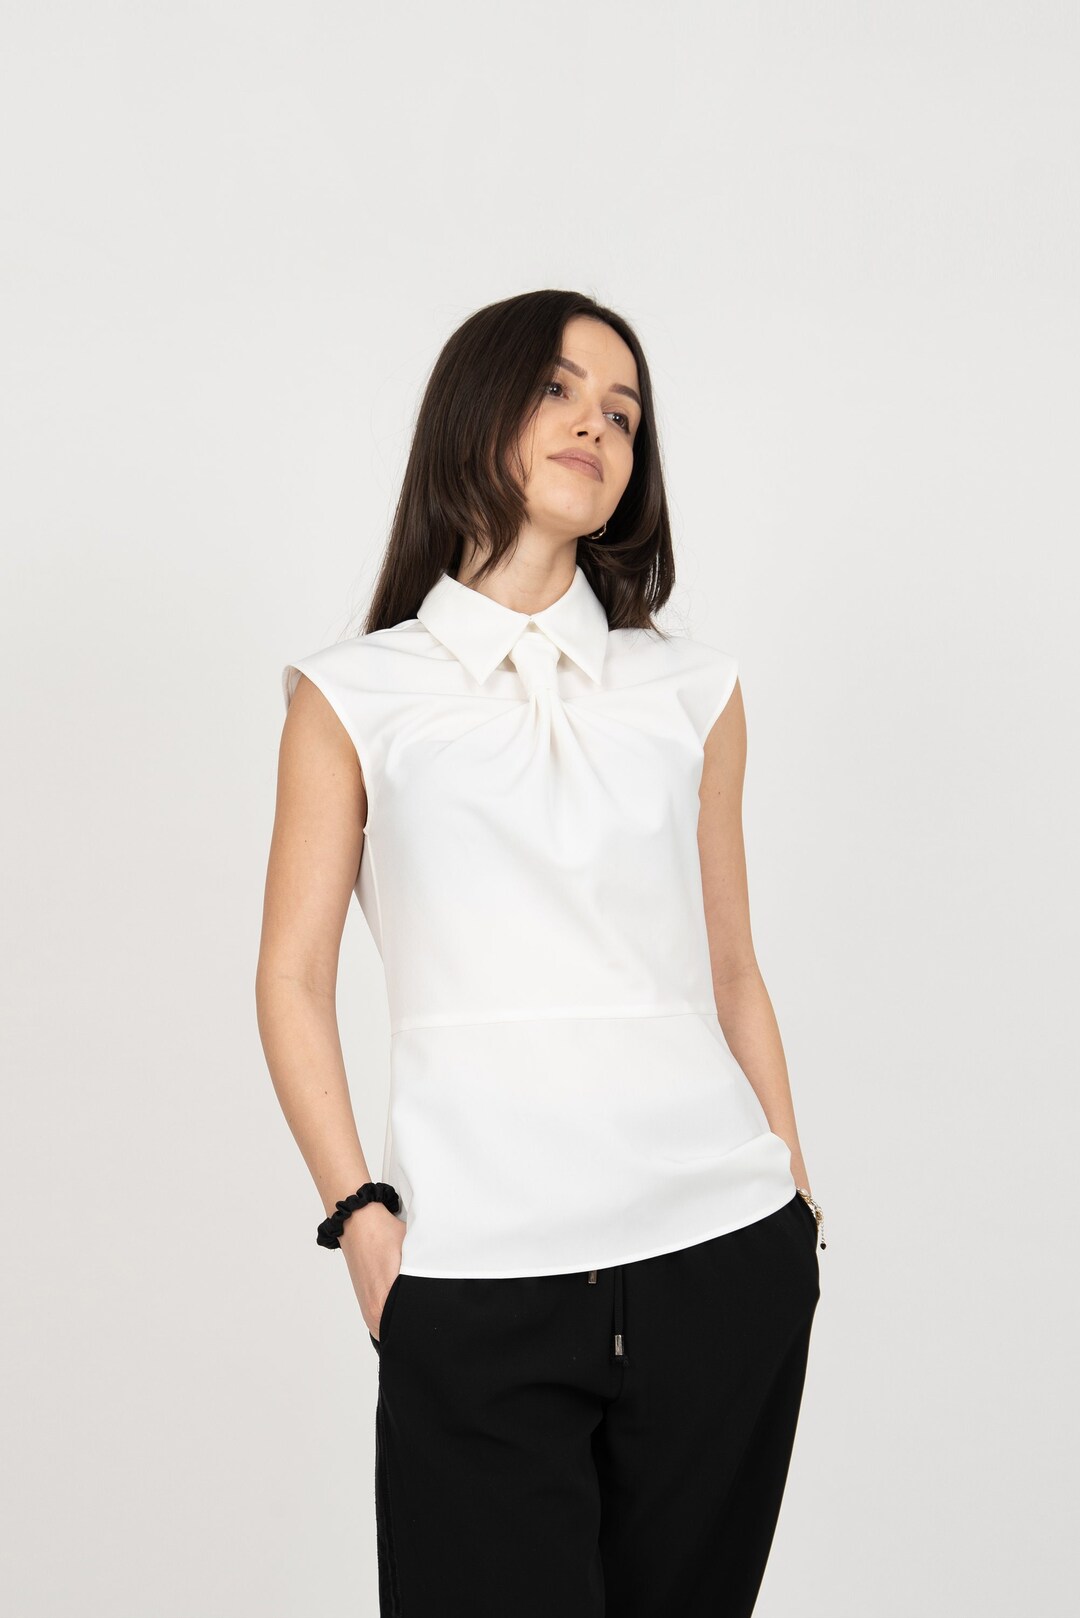 Smart White Shirt/collared White Top/sleeveless Shirt/handmade - Etsy